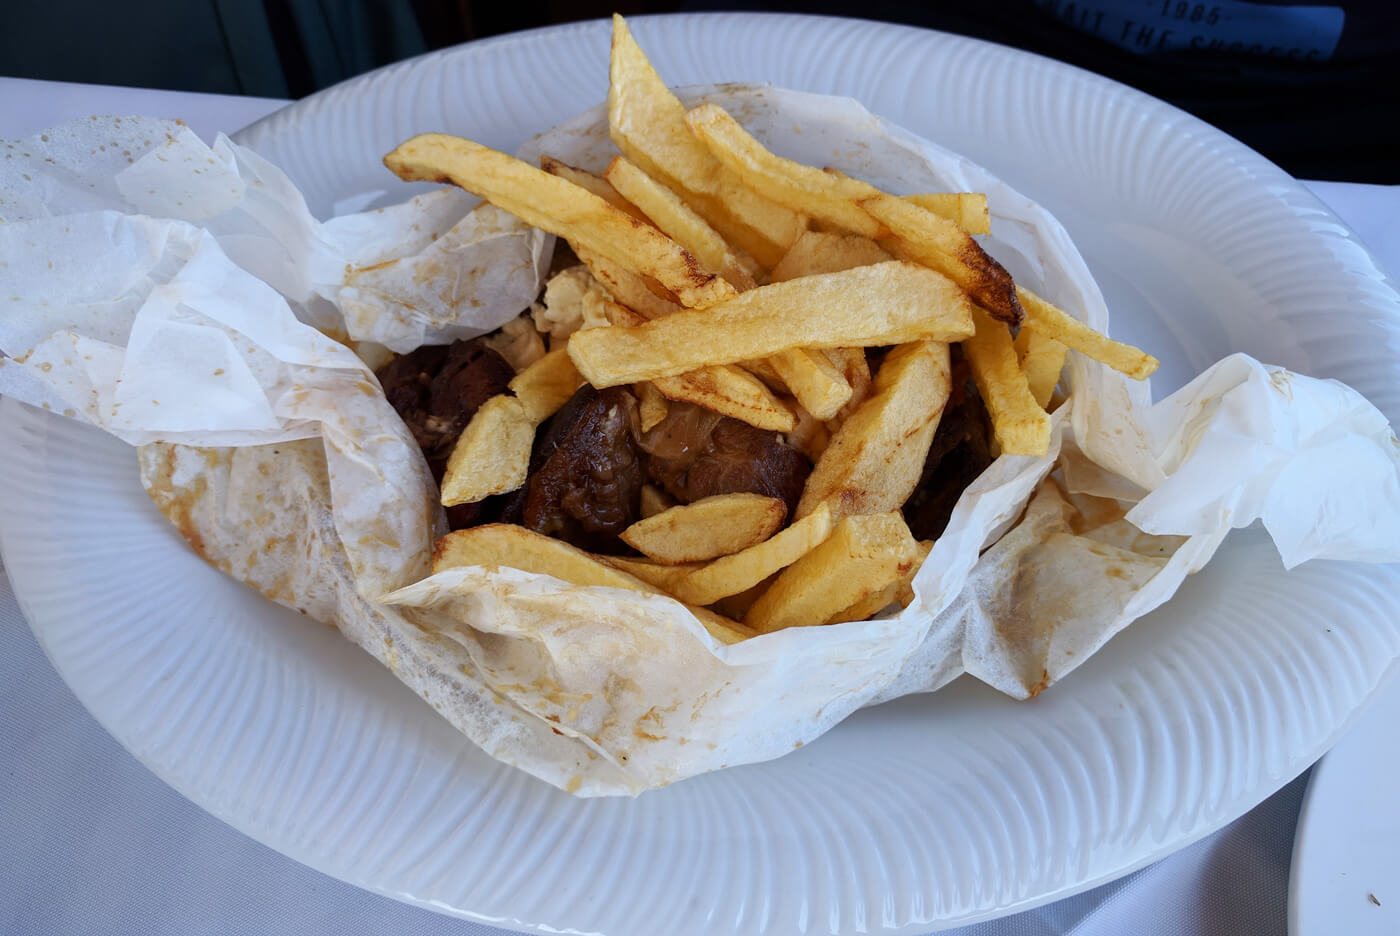 Клефтико - греческое блюдо из мяса и картофеля запеченное в печи